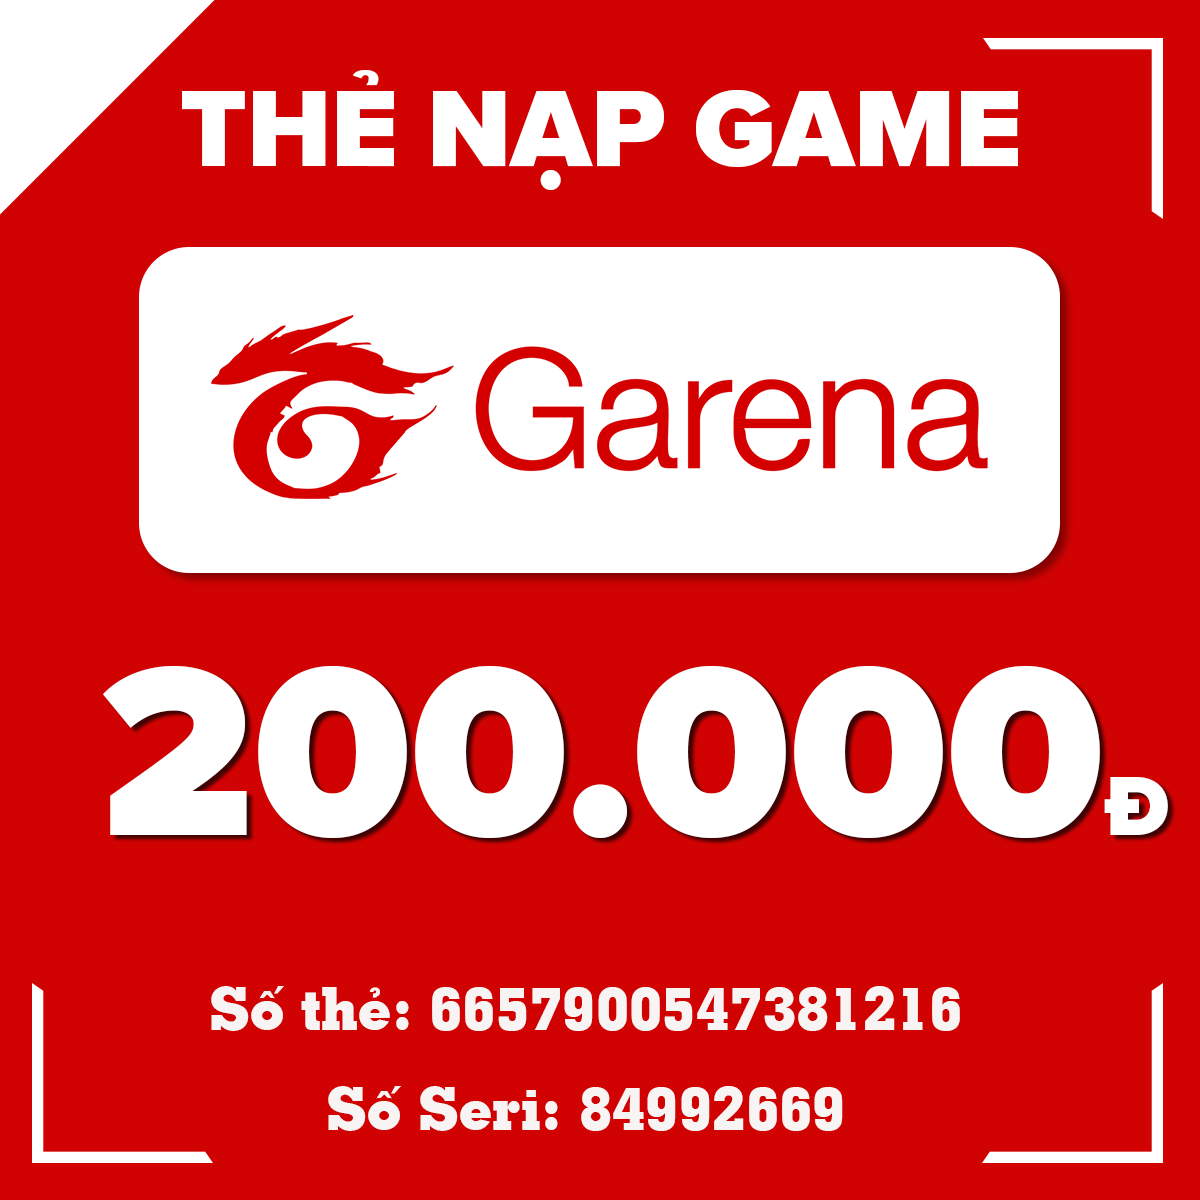 Mời bạn xem thêm mã thẻ cào Garena 200k miễn phí